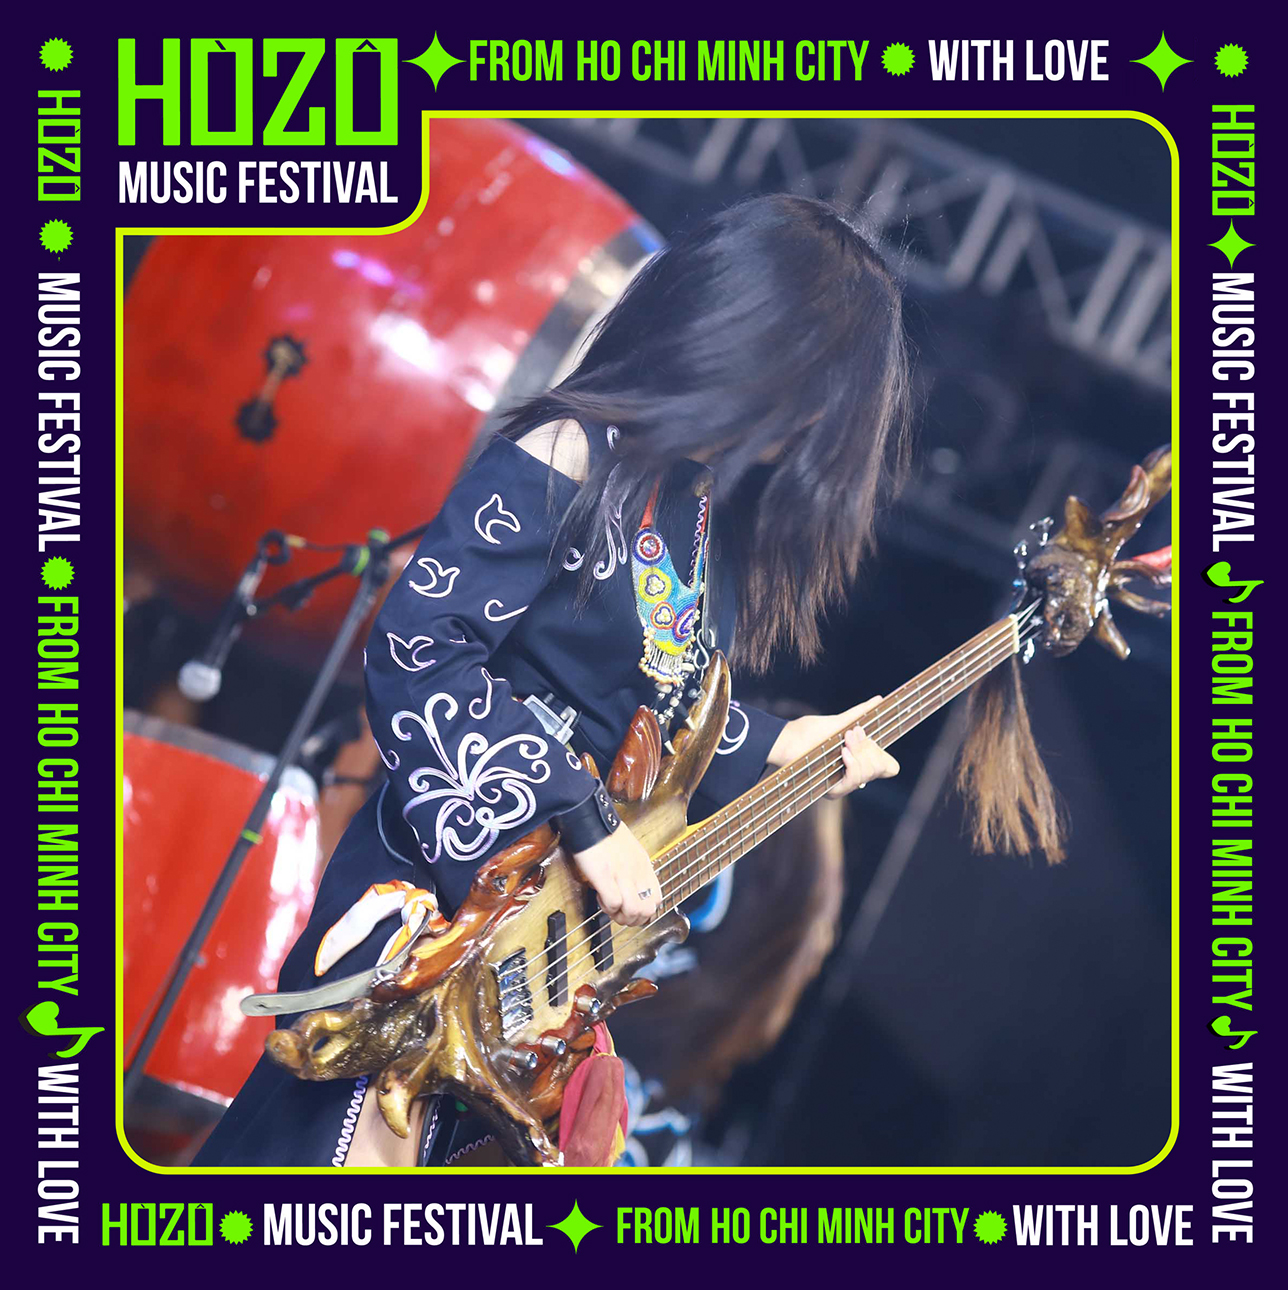 HOZO 2023 - khi âm nhạc, tình yêu và những trải nghiệm của “Hệ sinh thái lễ hội” khó quên cùng “bắt tay” chinh phục 200 nghìn khán giả - Ảnh 4.